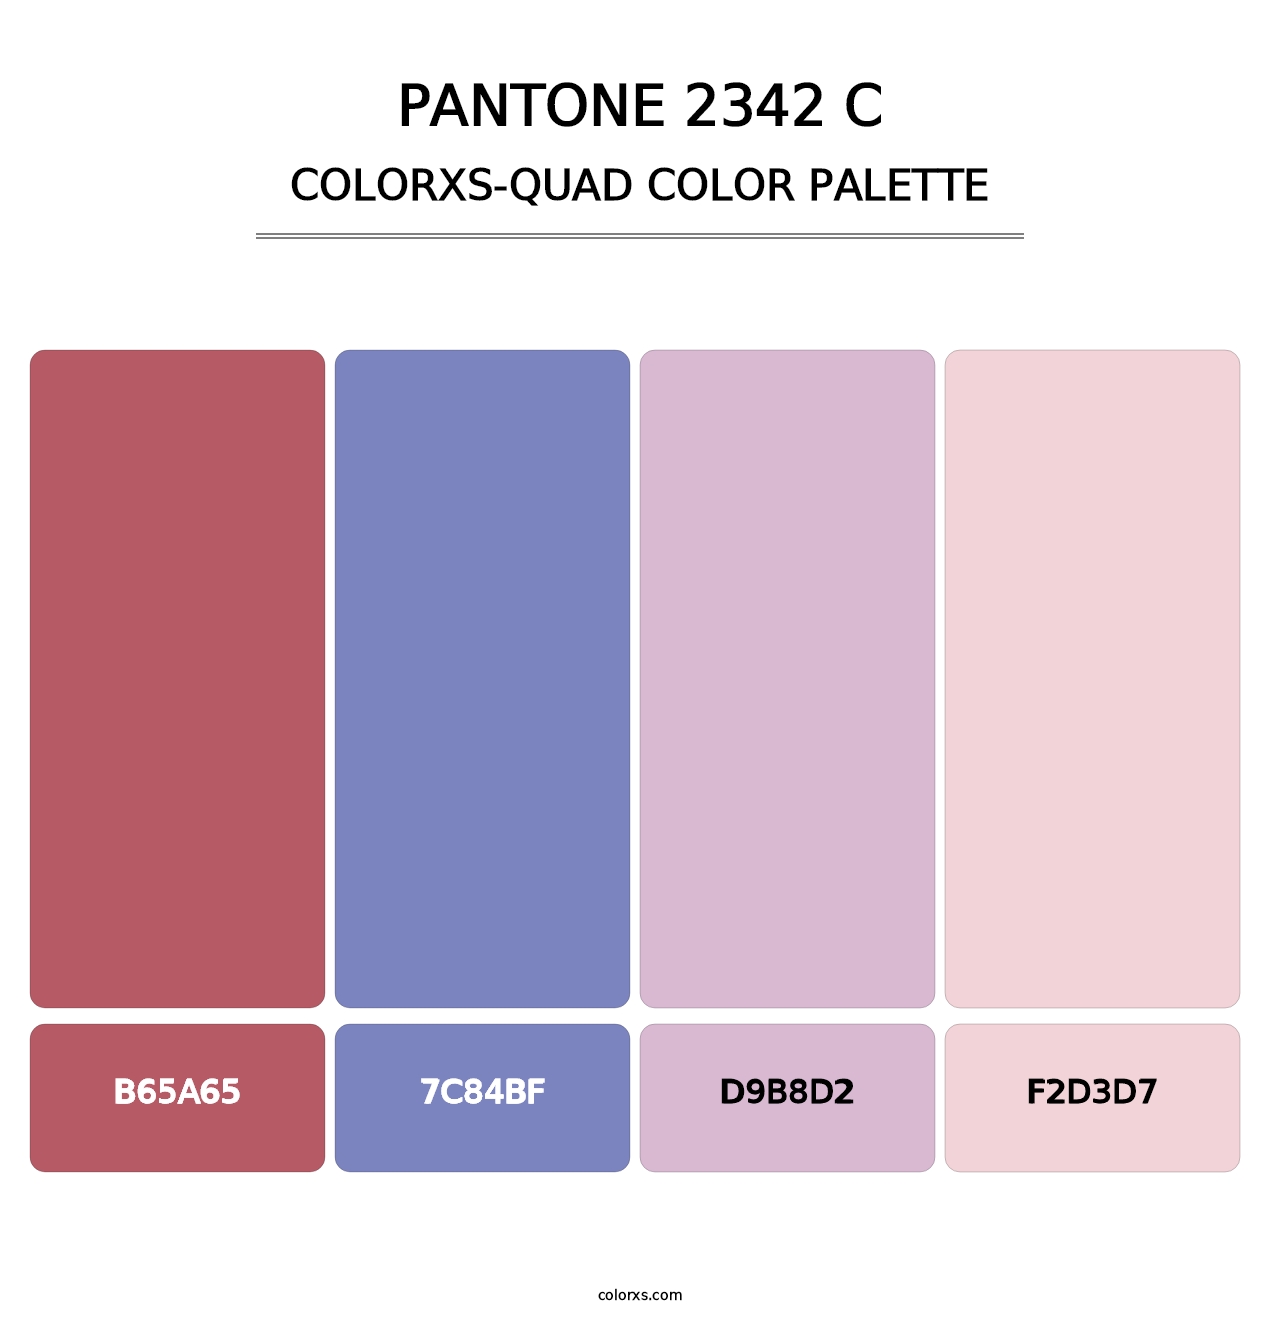 PANTONE 2342 C - Colorxs Quad Palette